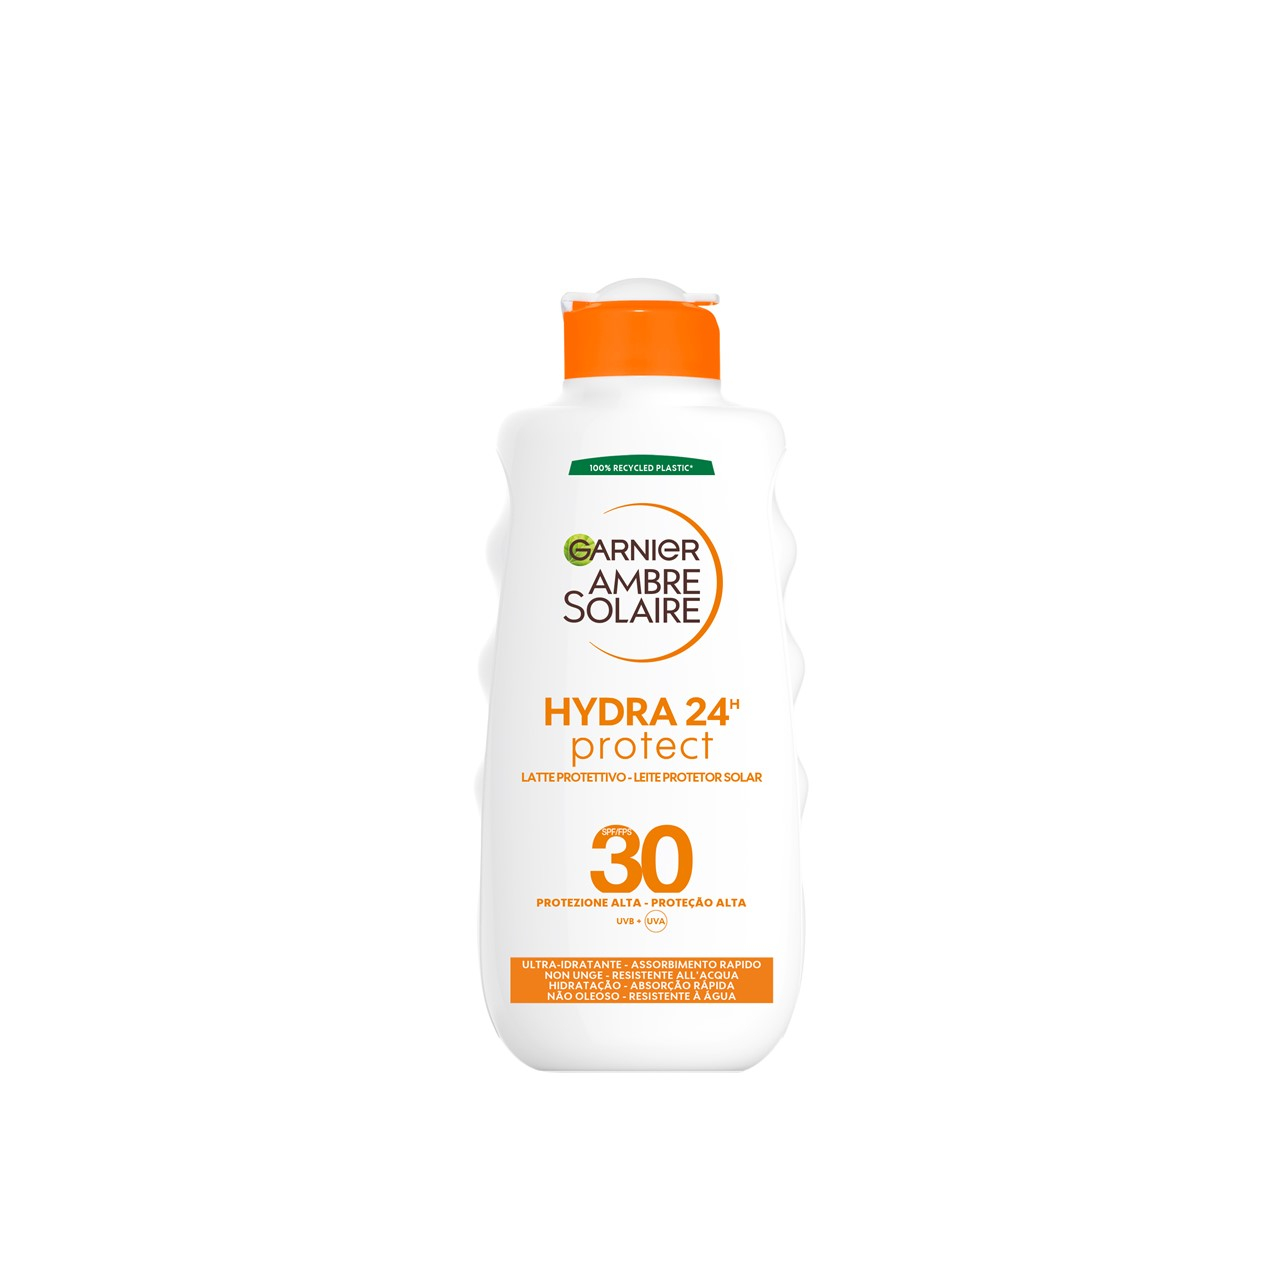 Garnier Ambre Solaire Hydra Protective Sun Body Lotion SPF30 200ml (6.76fl oz)